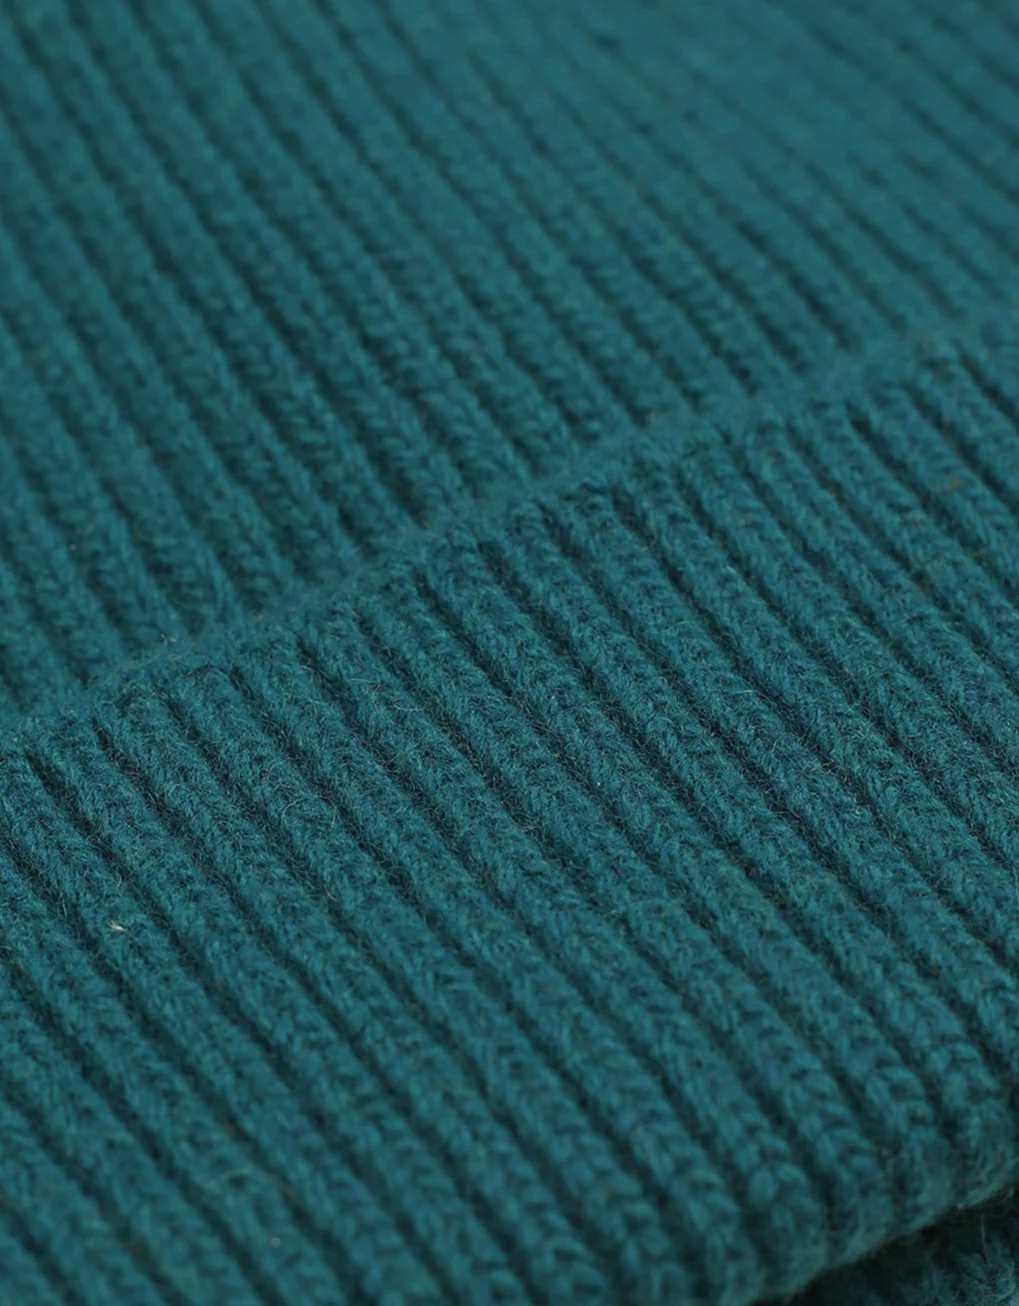 Colorful Standard - MERINO WOOL HAT - OCEAN GREEN 2